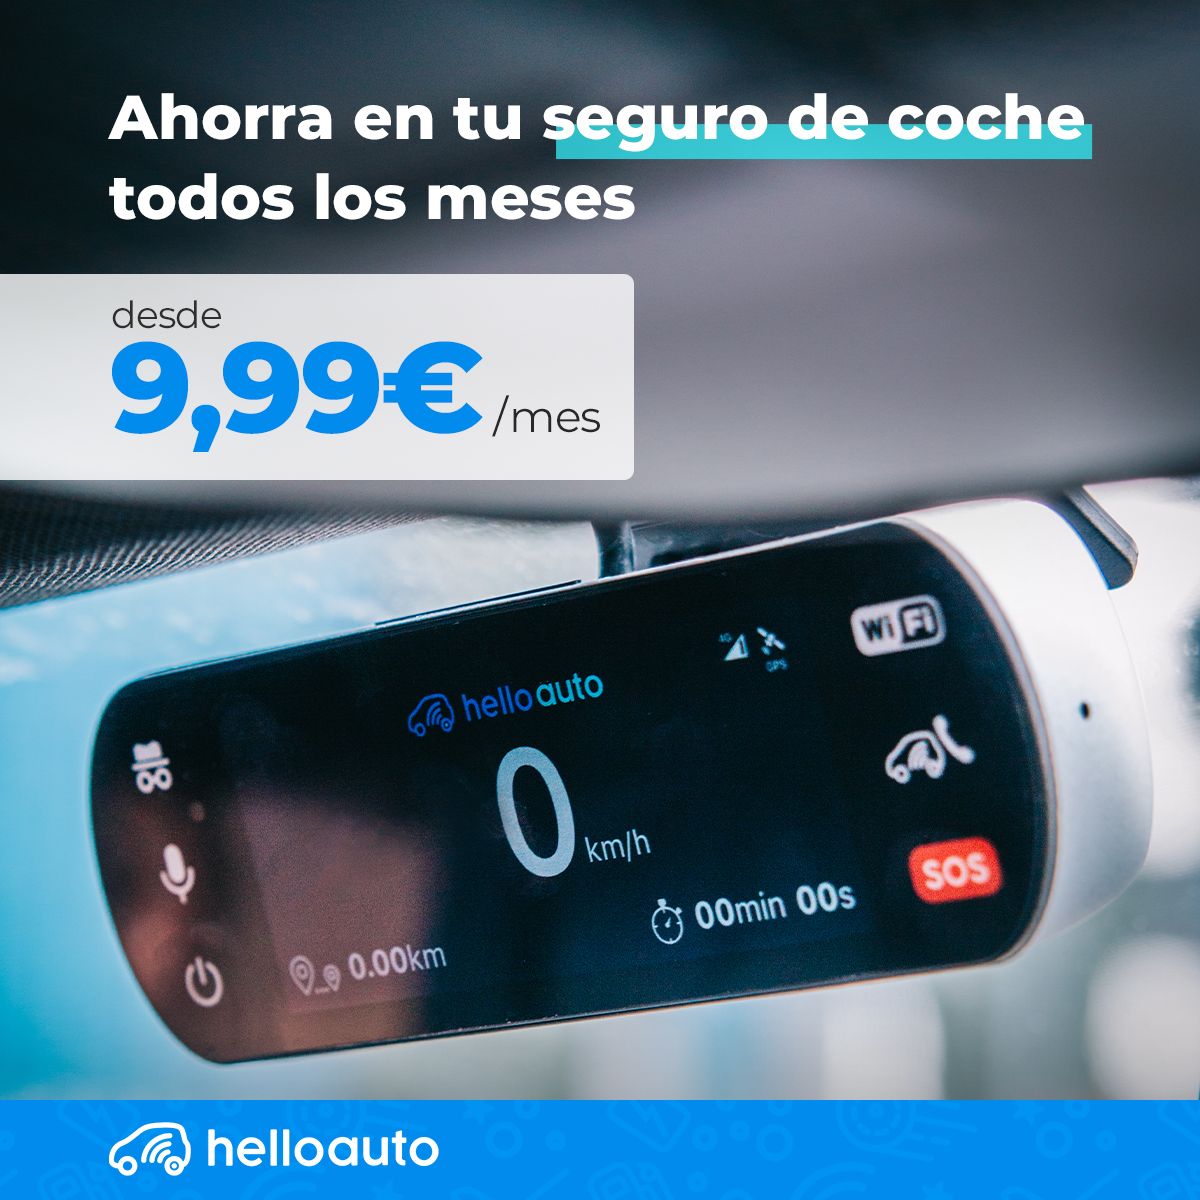 Hello Auto Flex puede contratarse por una cuota mensual que va desde los 9,99 euros al mes, más 0,49 euros por cada día que se conduzca